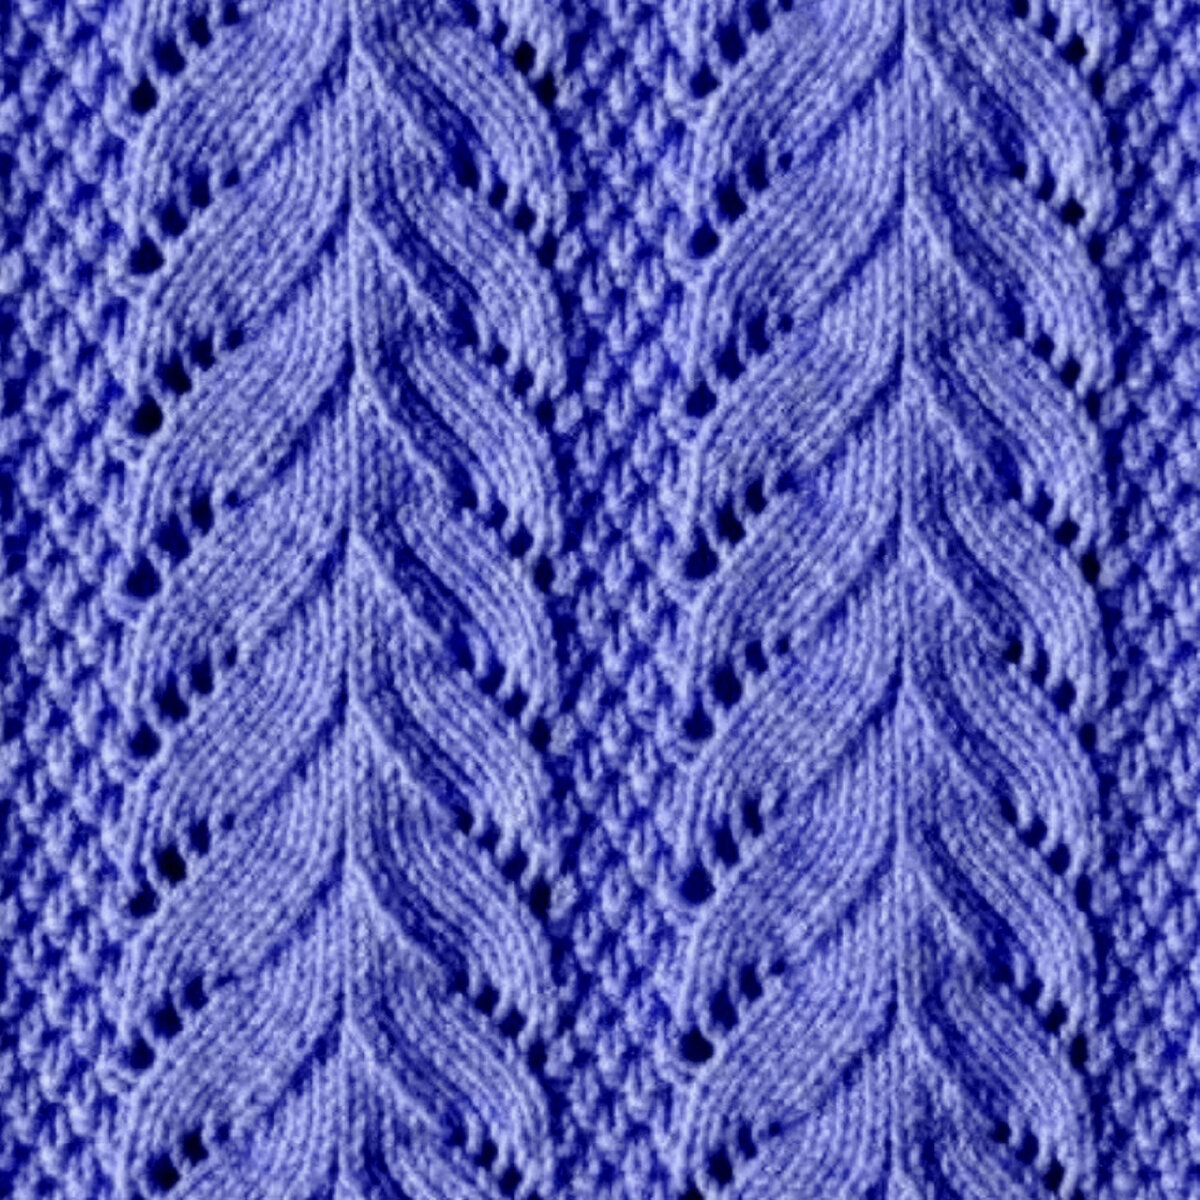 Ажурное вязание спицами для женщин: описание, схемы узоров, фото примеры и идеи